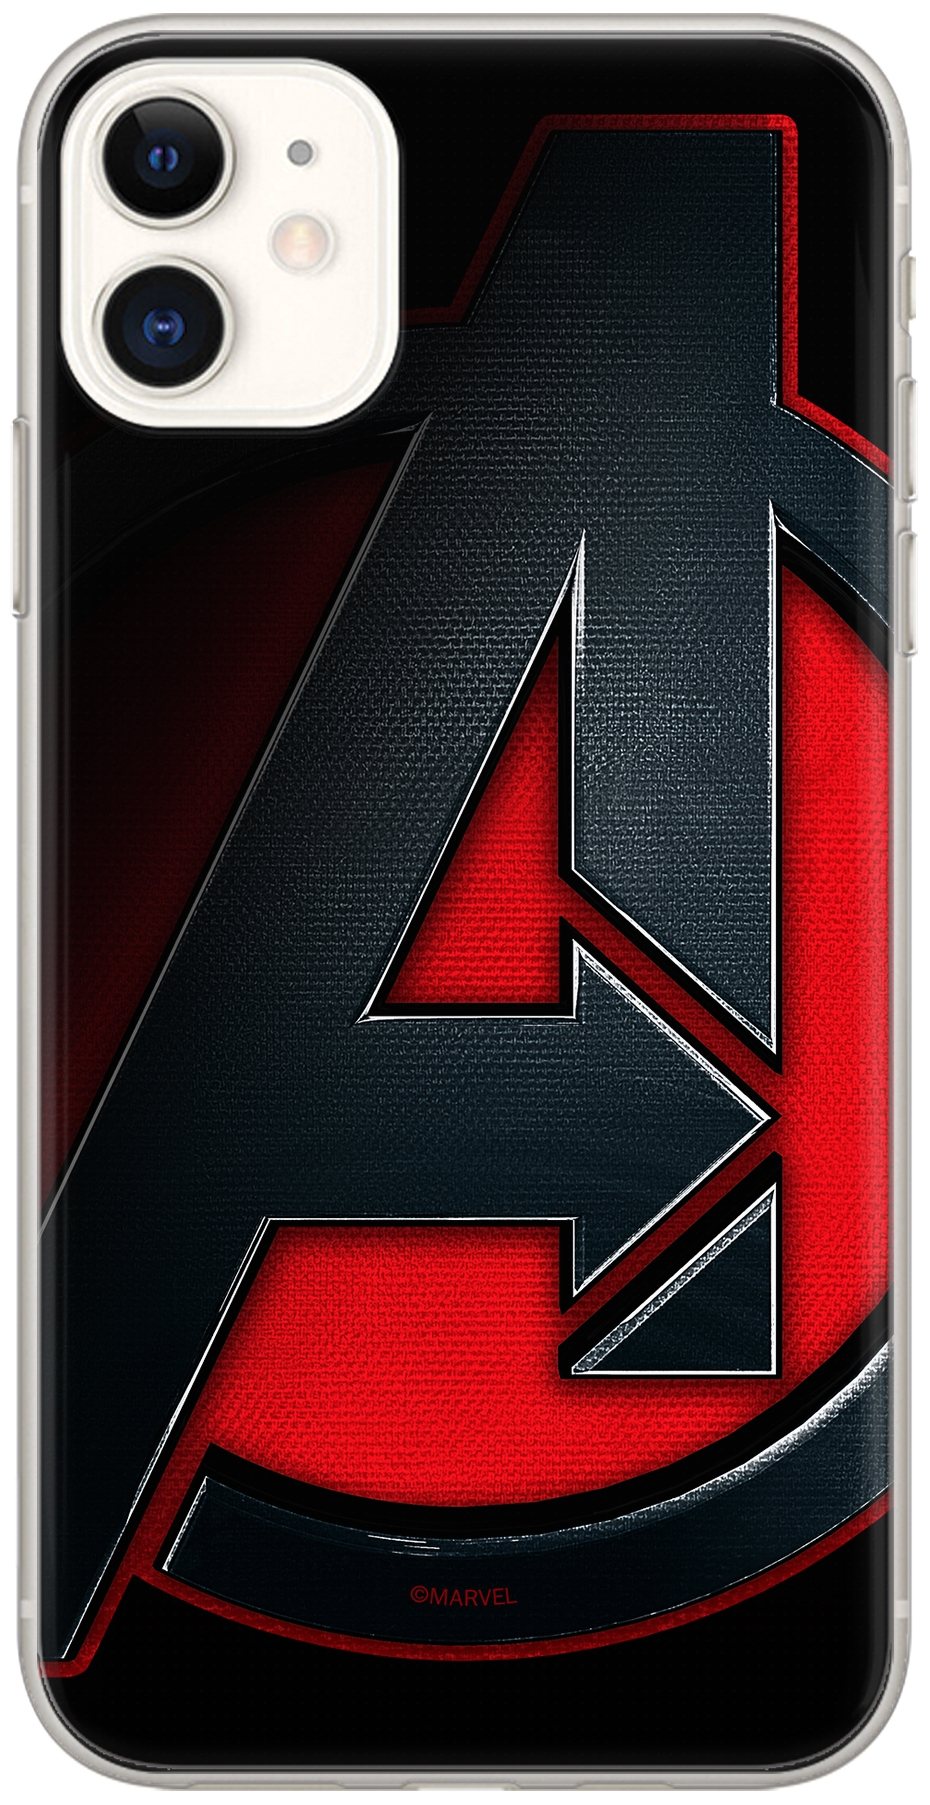 Lizenzhülle Handyhülle für Samsung A50/A50s/A30s Hülle mit Motiv Avengers 019